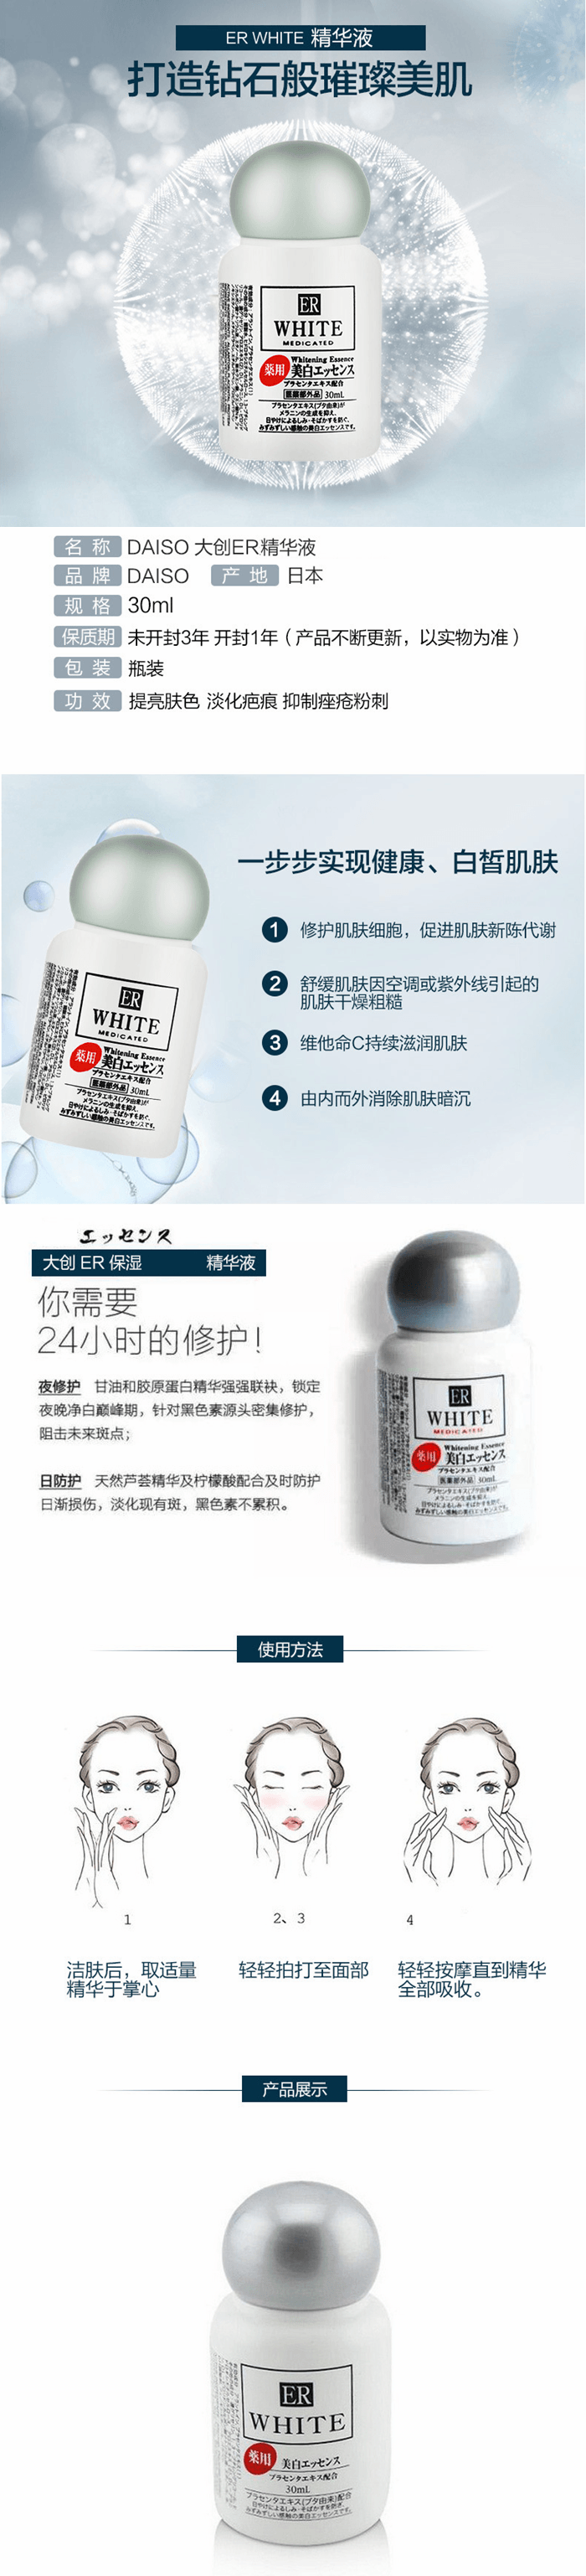 【特价回馈】【日本直邮】日本 DAISO 大创 ER胎盘素美白精华液30ml 晒后修复